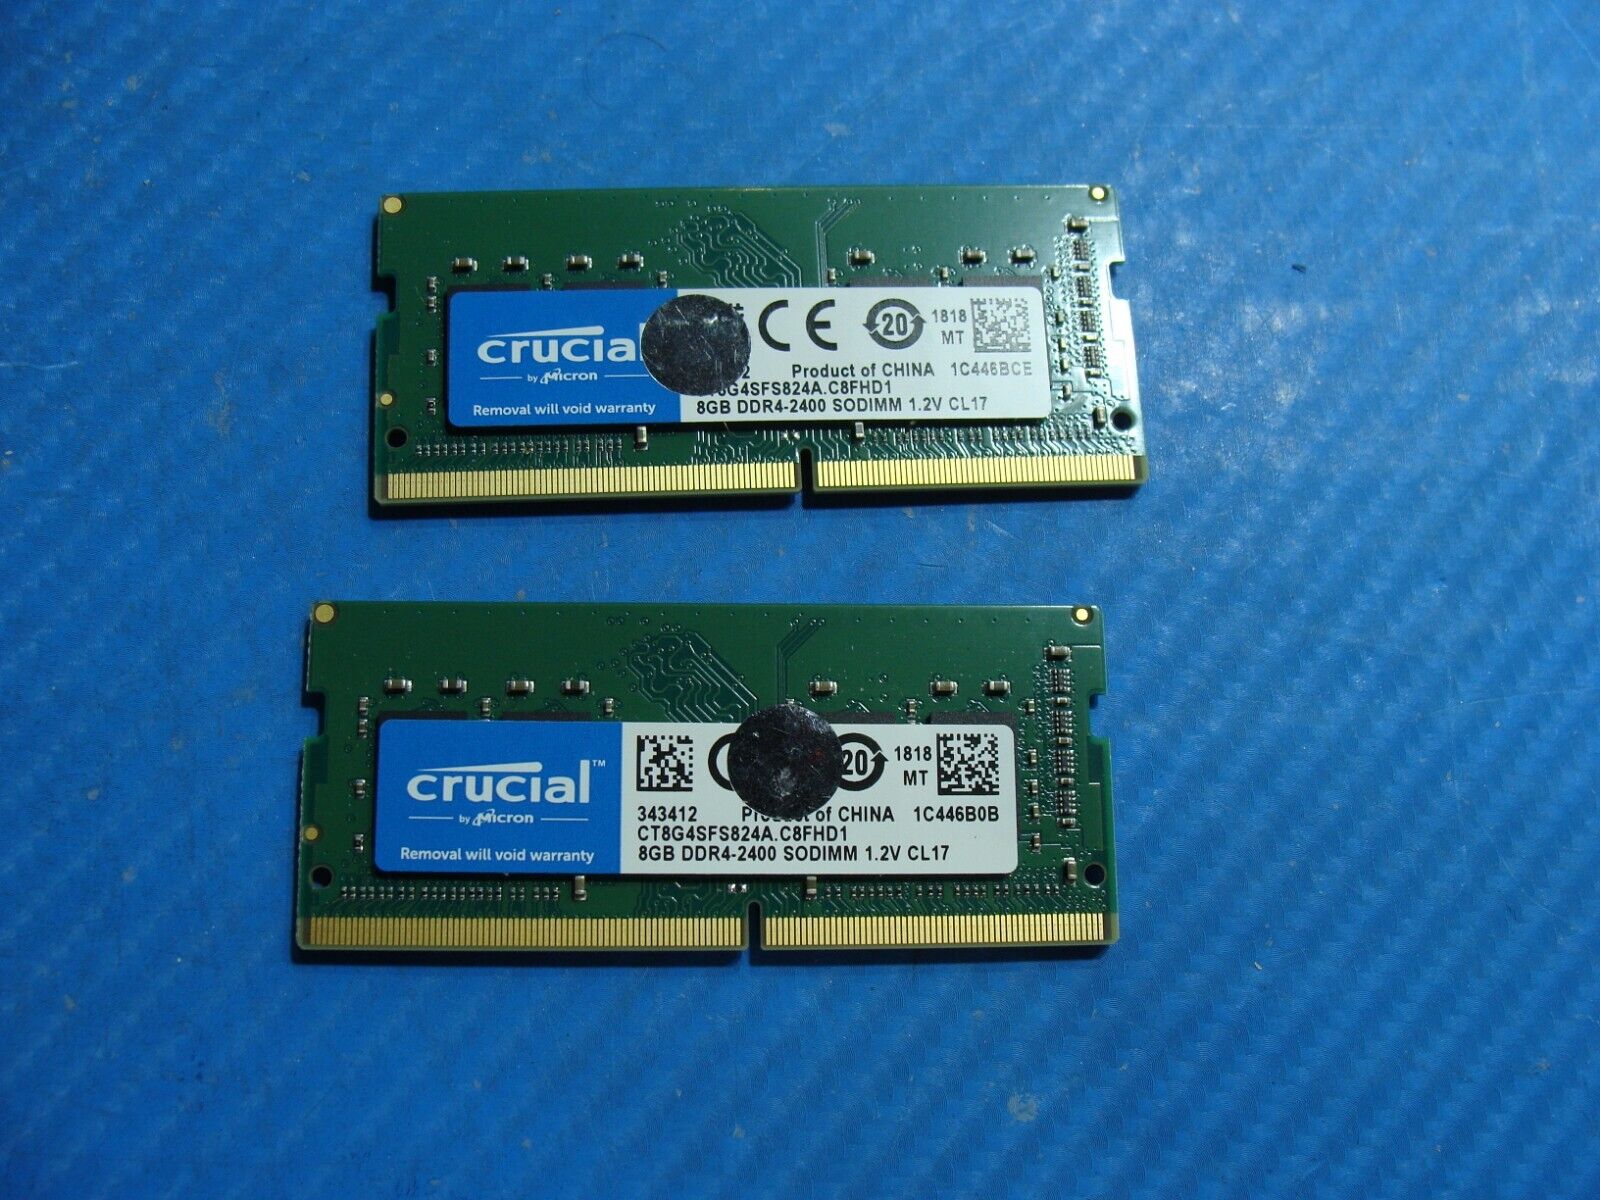 Dell 3480 So-Dimm Crucial 16GB 2x8GB Memory Ram DDR4-2400  CT8G4SFS824A.C8FHD1